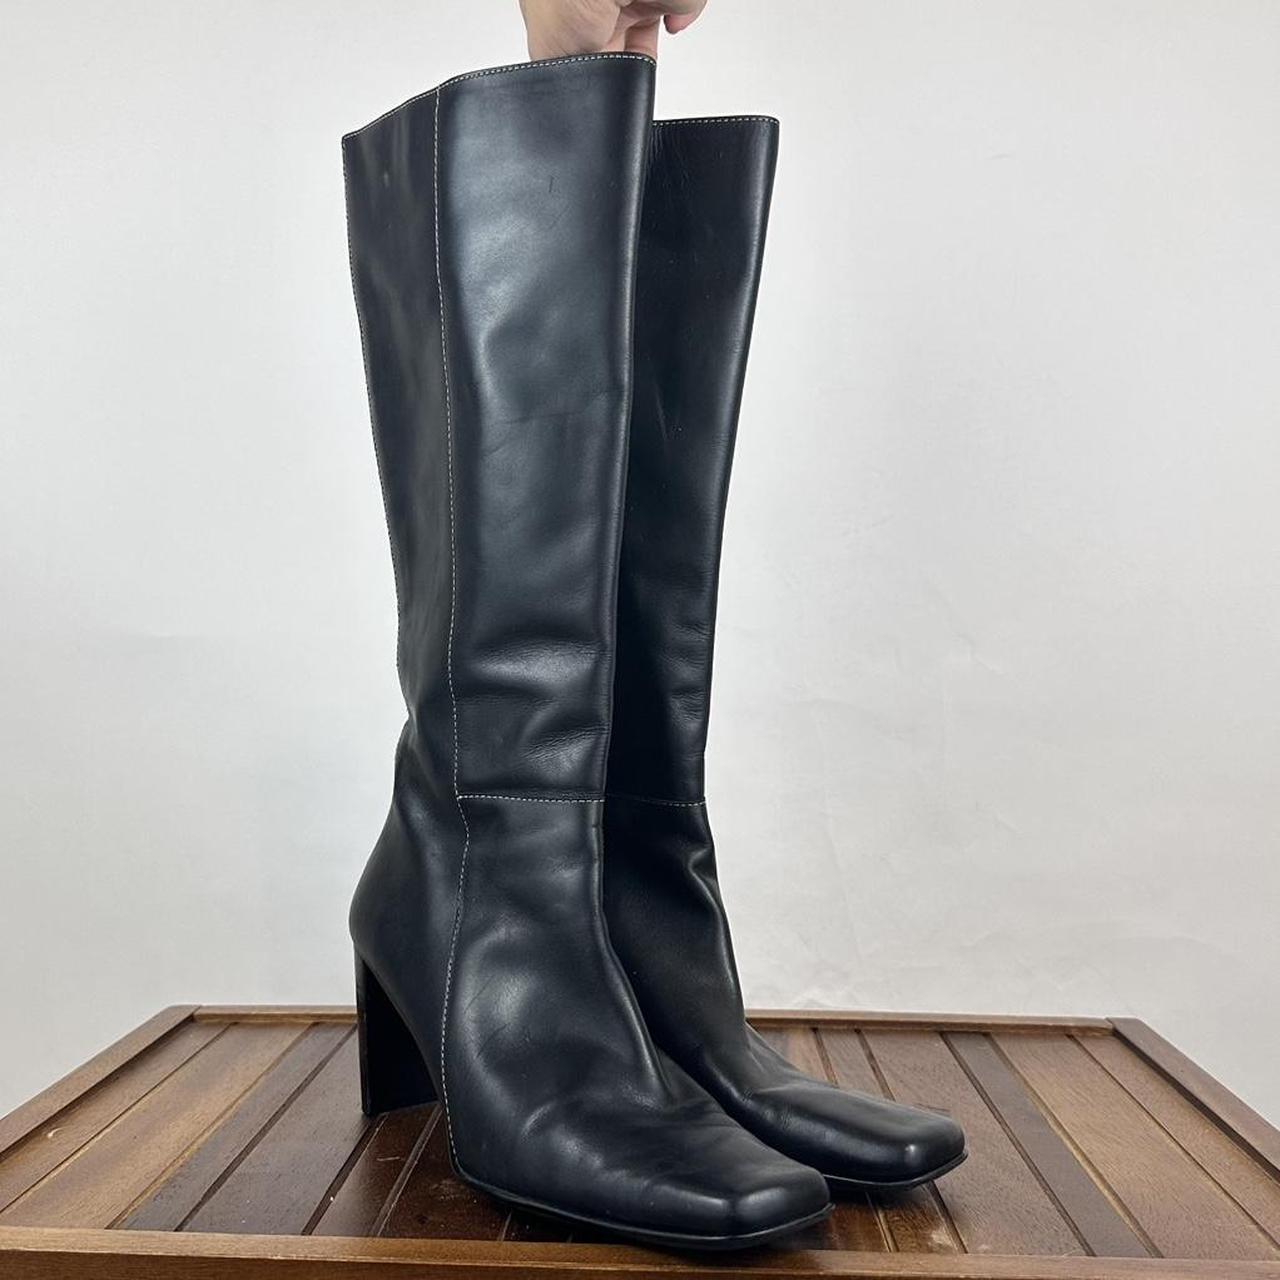 Vintage Anne Klein Knee High Boots Length:... - Depop